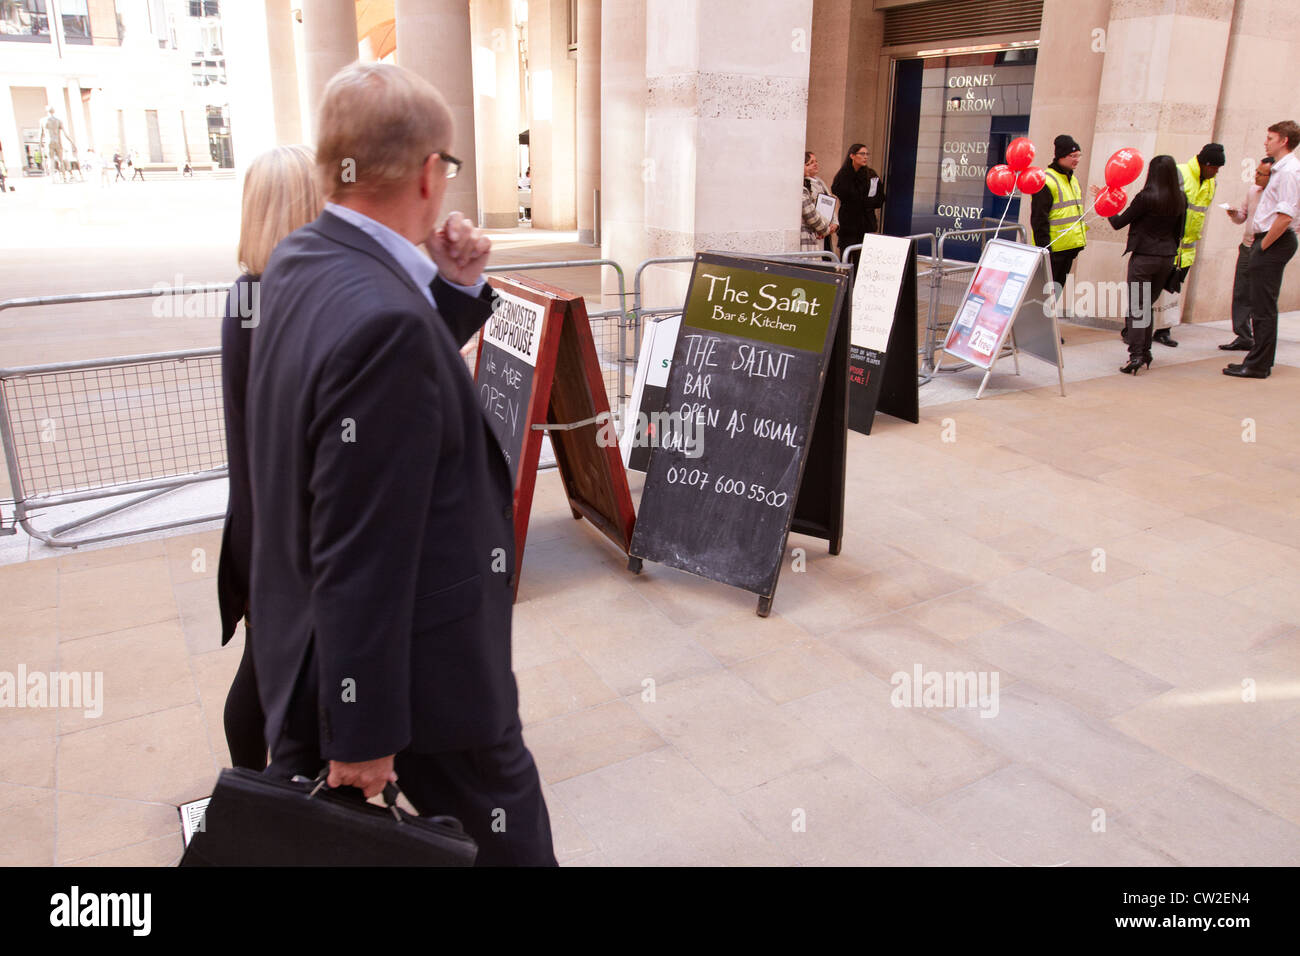 Las empresas muestran letreros que decían "Abrir como de costumbre", después de la protesta de Londres ocupan obligado Paternoster Square de Londres para cerrar Foto de stock